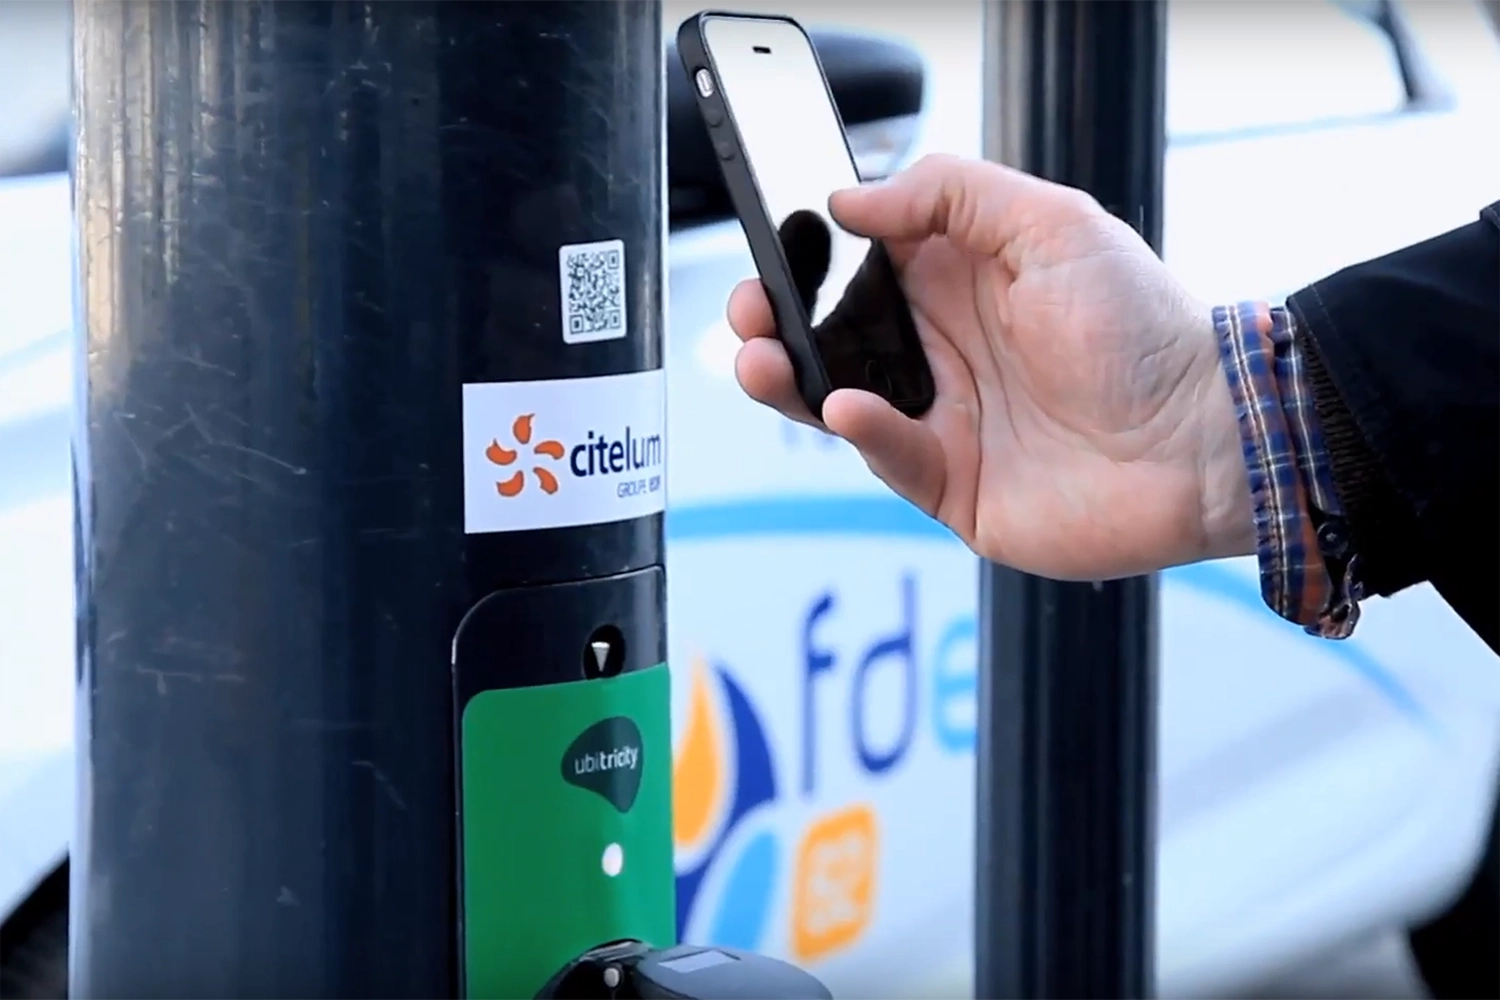 Fahrer eines E-Autos scannt QR-Code an einer öffentlichen Ladestation in Calais, Frankreich, um den Ladevorgang zu autorisieren.